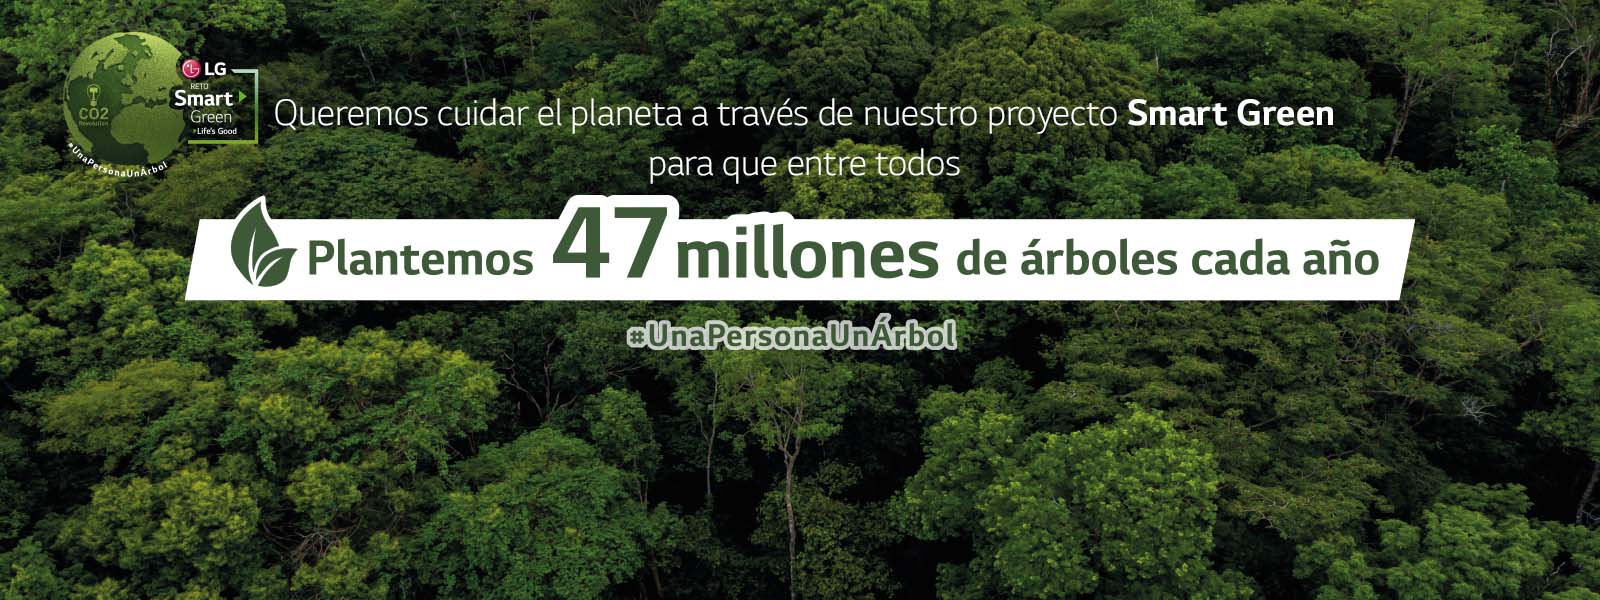 Queremos cuidar el planeta a través de nuestro proyecto Smart Green para que entre todos plantemos 47 millones de árboles cada año